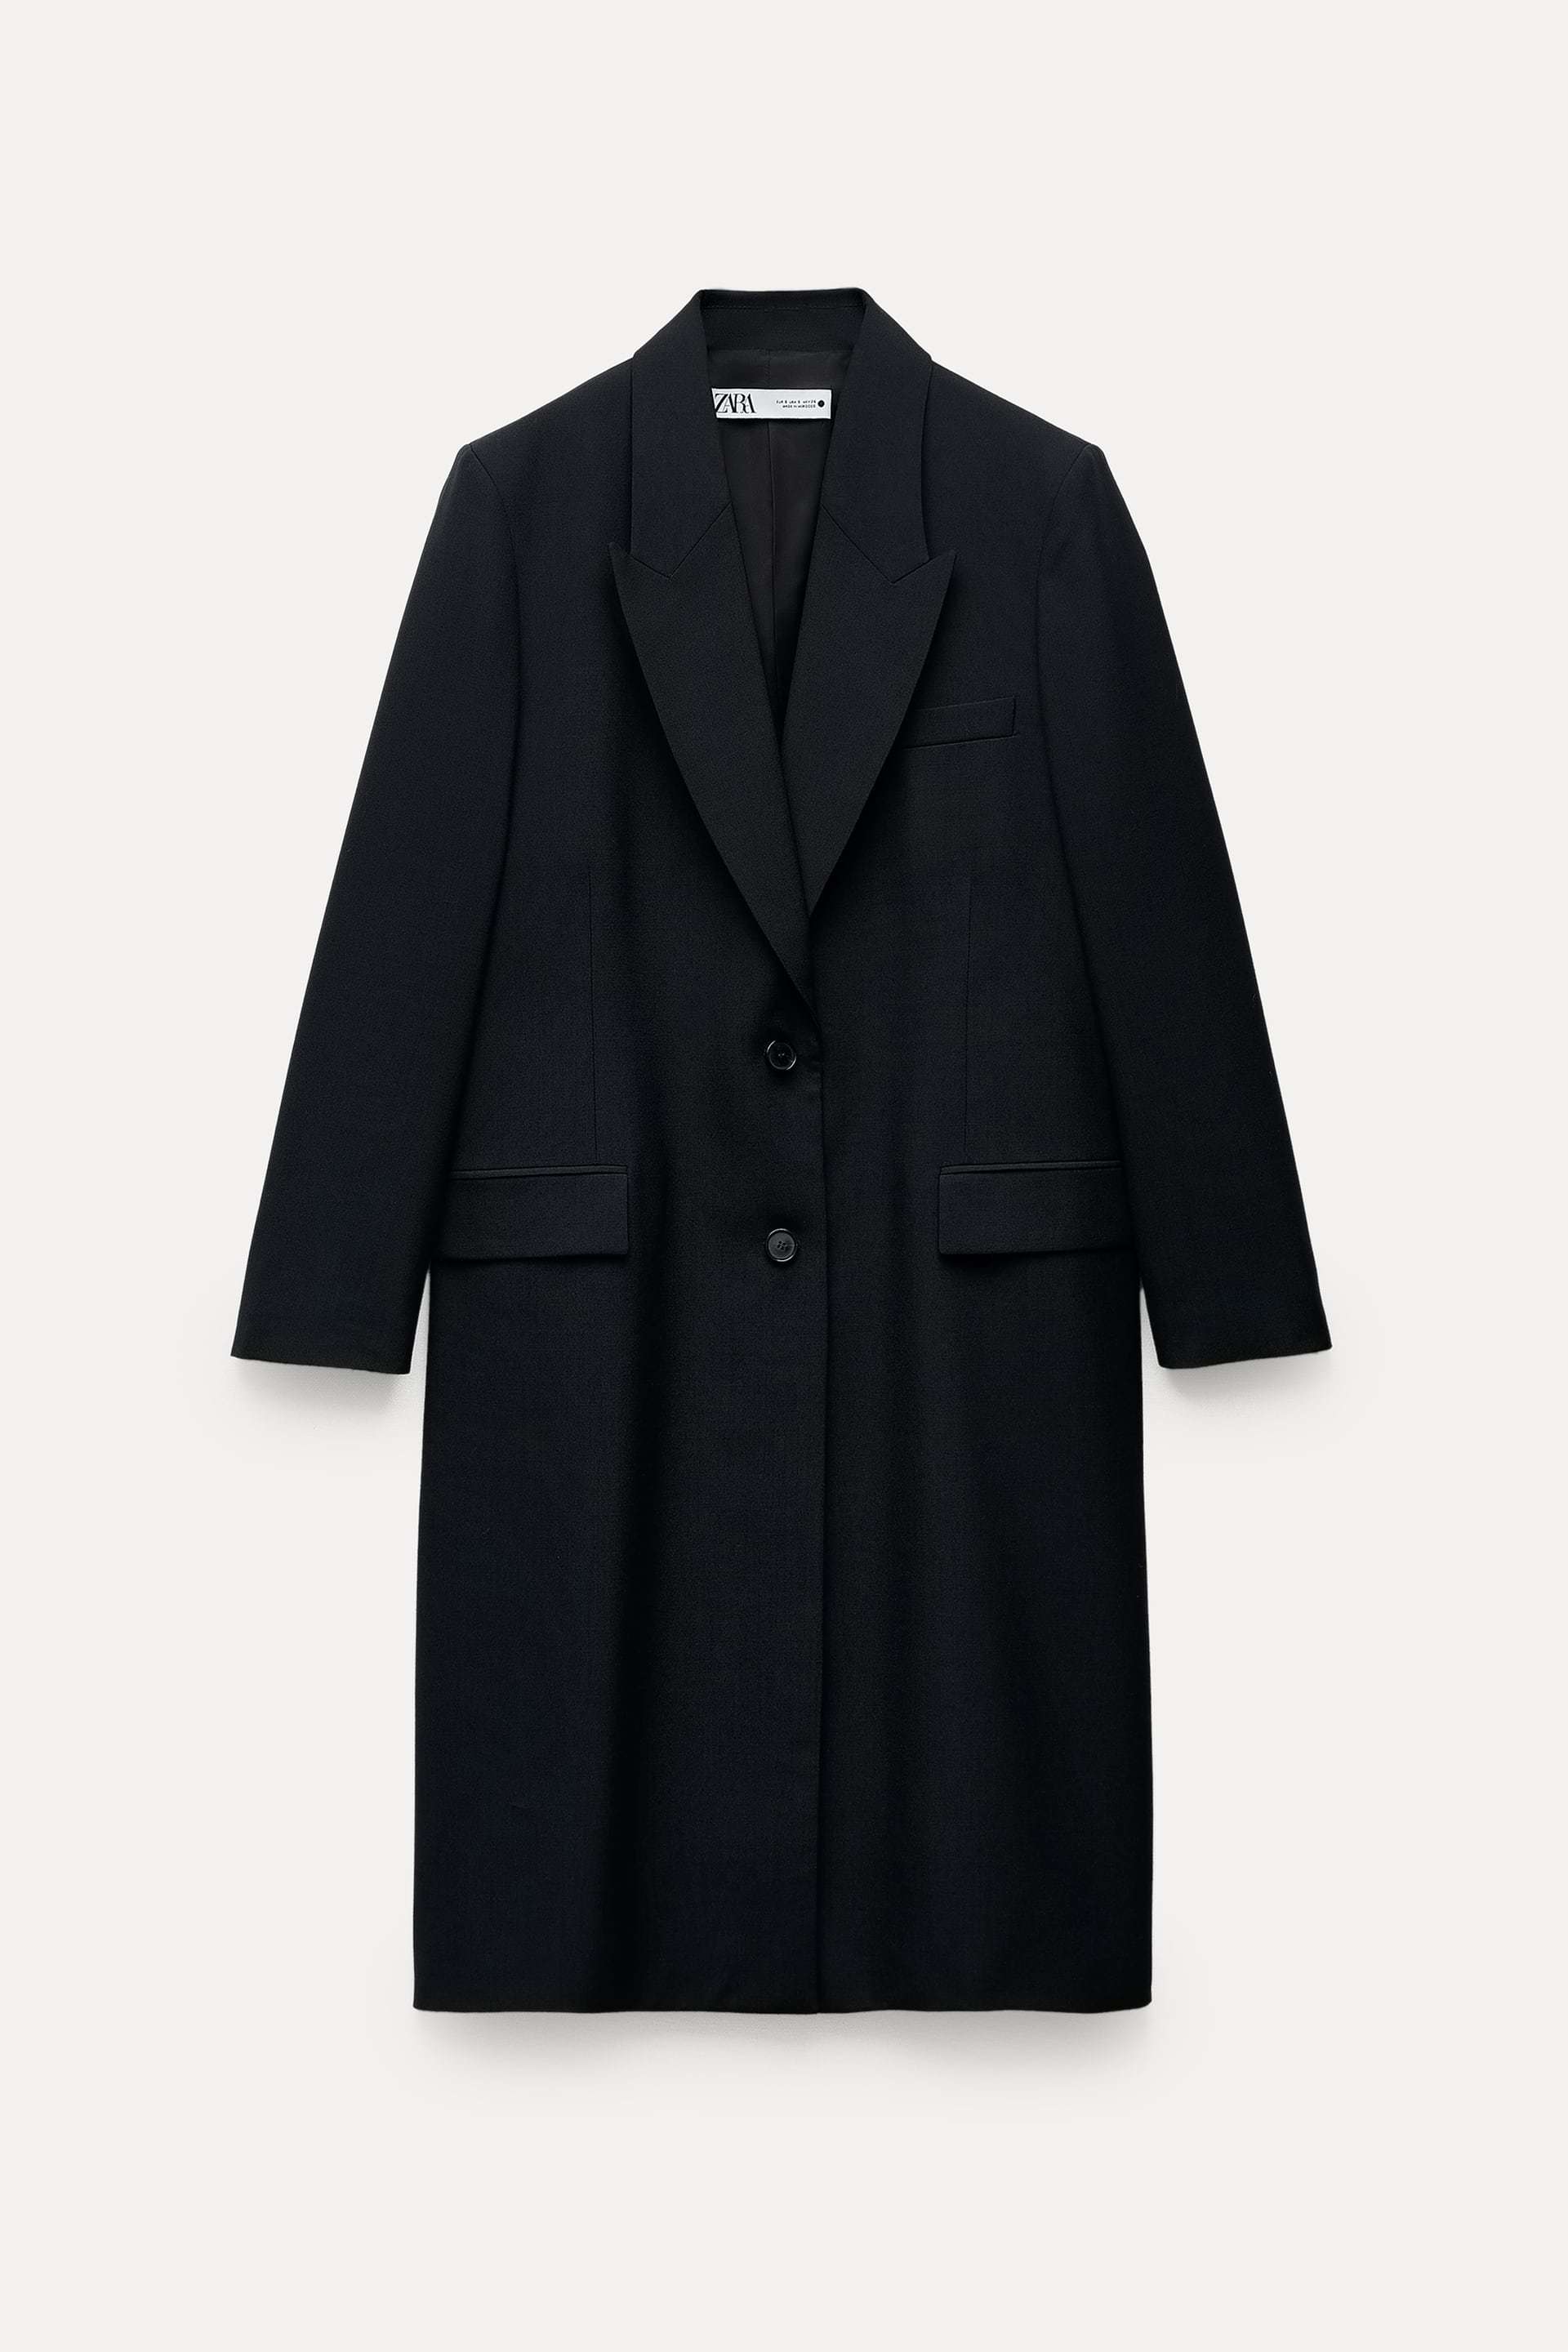 Abrigo negro de corte masculino de Zara (119 euros).